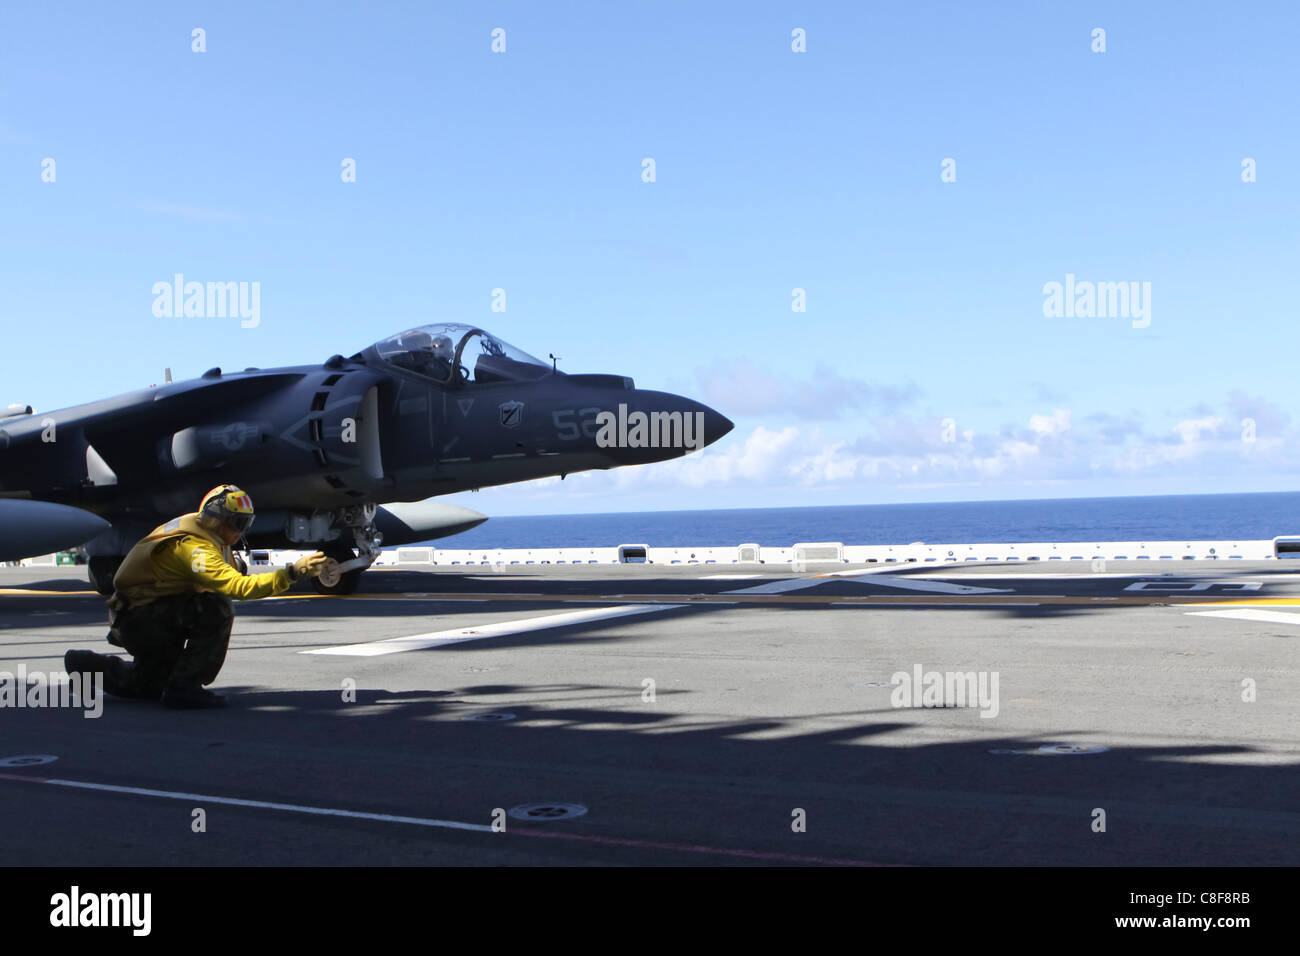 Ein AV-8 b Harrier Marine Angriff Geschwader 214, 31. Marine Expeditionary Unit ist das Signal für den Start an Bord der USS Essex gegeben. Stockfoto